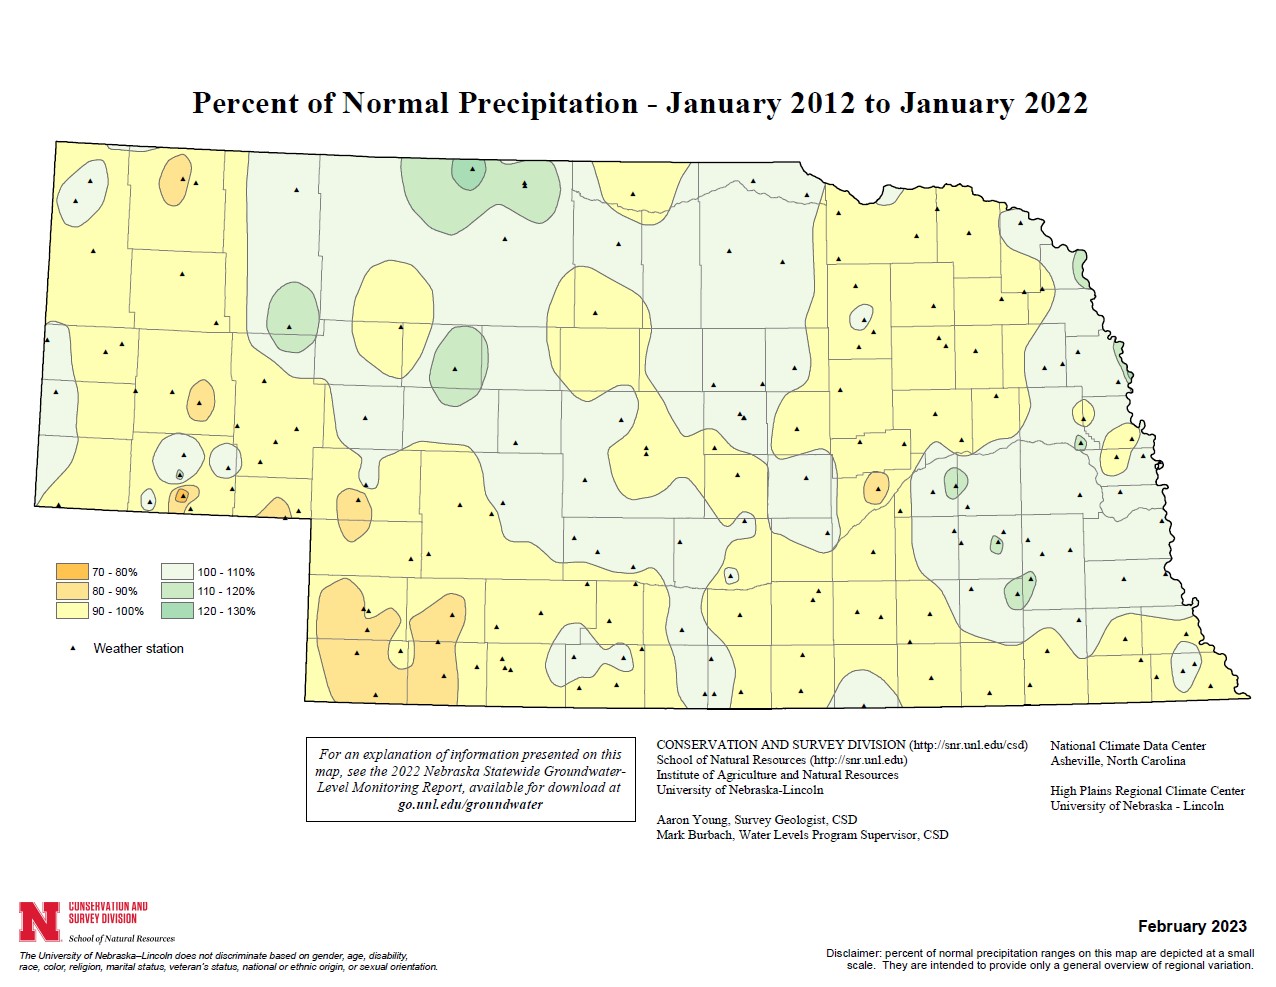 Percent of Normal Precipitation, January 2012 - January 2022